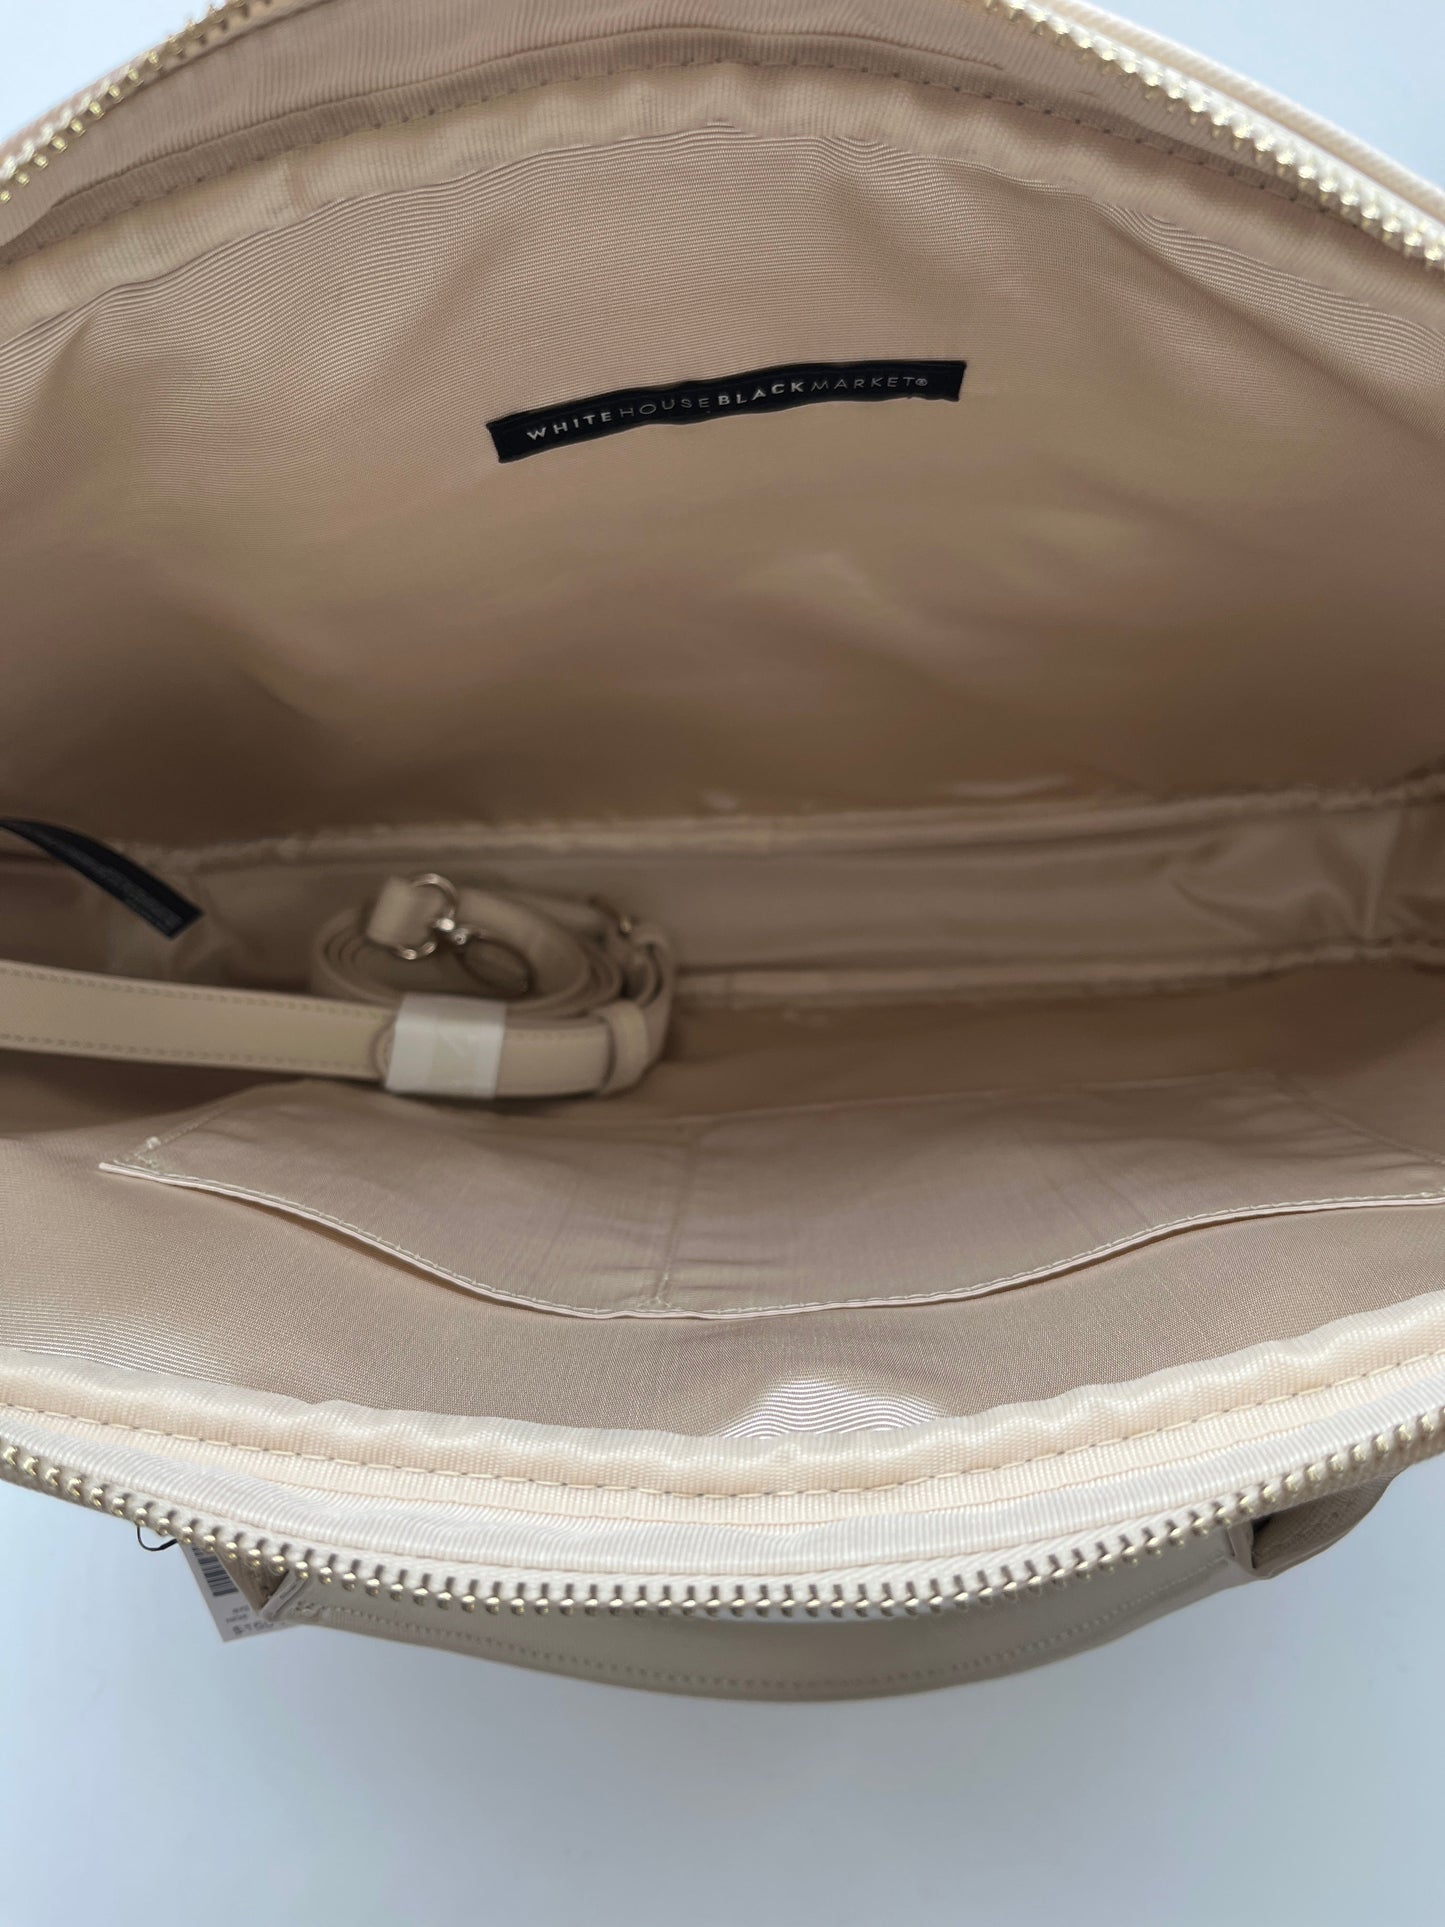 Handbag By White House Black Market  Size: Large